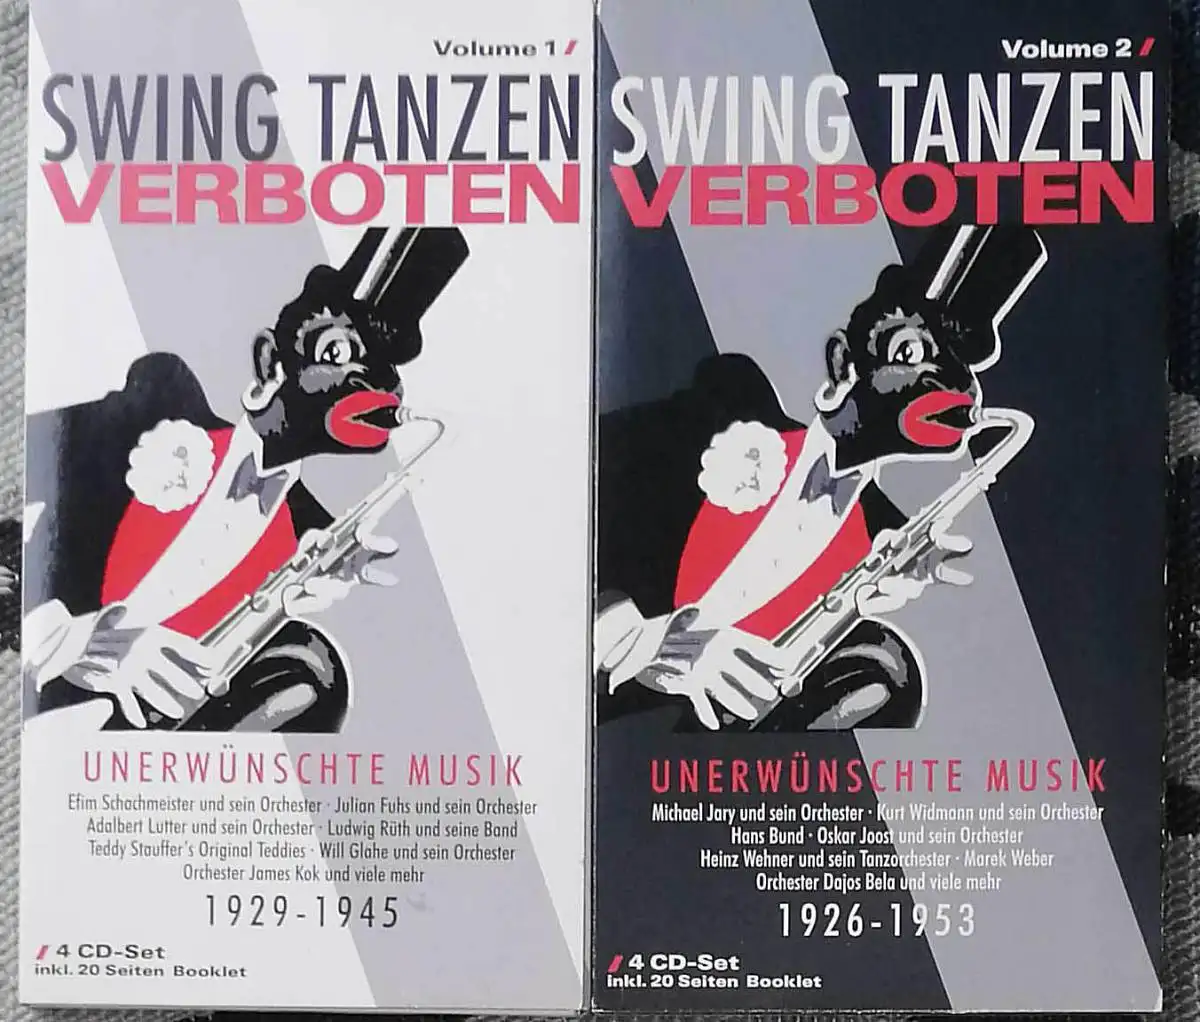 Swing tanzen verboten;  Vol. 1 und 2: 1929 - 1946 / 1926 - 1953.   KOMPLETT !